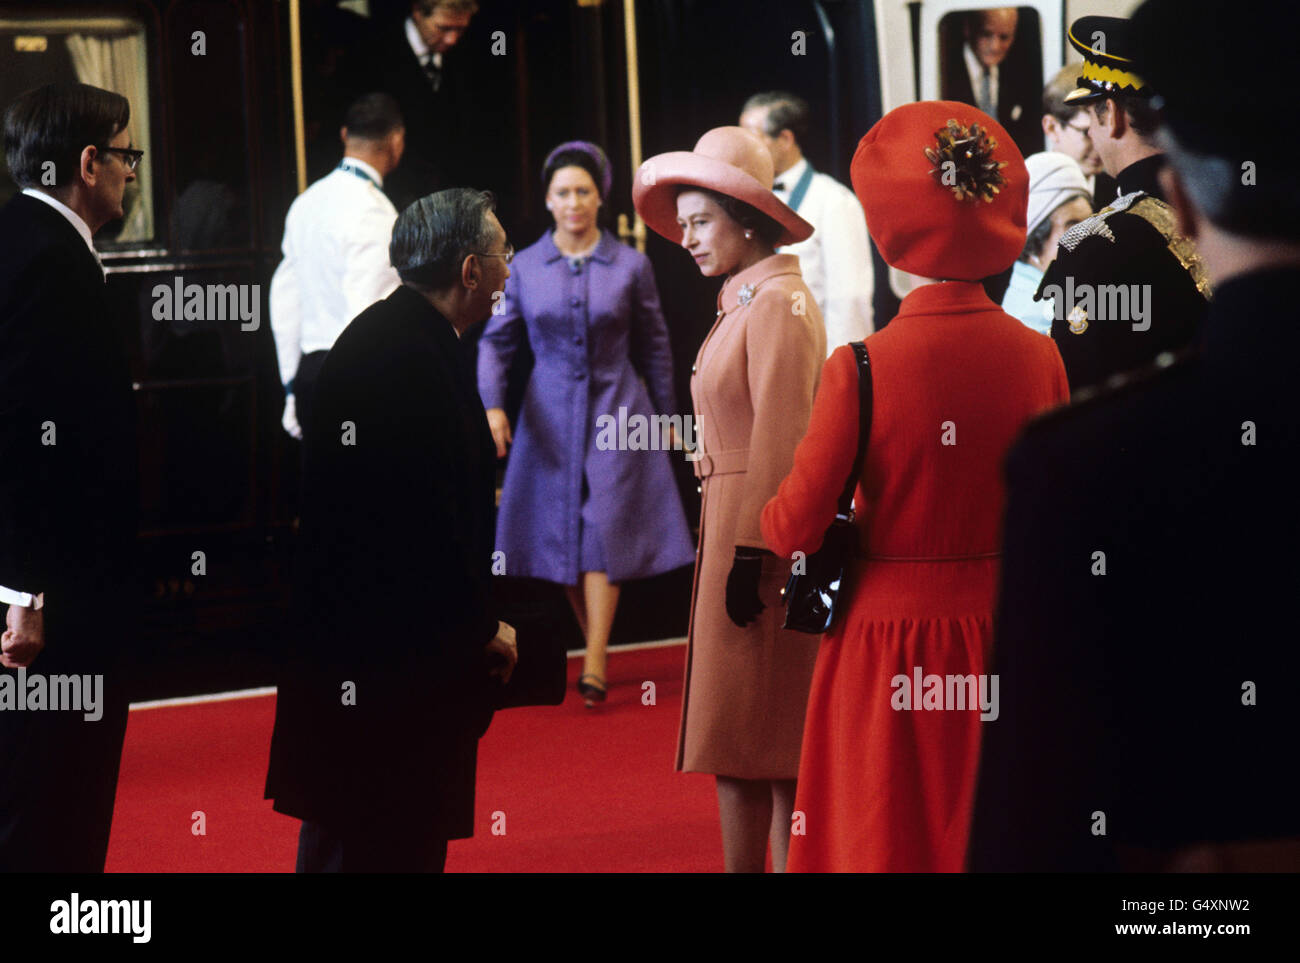 La reine Elizabeth II salue l'empereur Hirohito du Japon à la gare Victoria. La princesse Margaret est vue s'en prendre au train. Banque D'Images